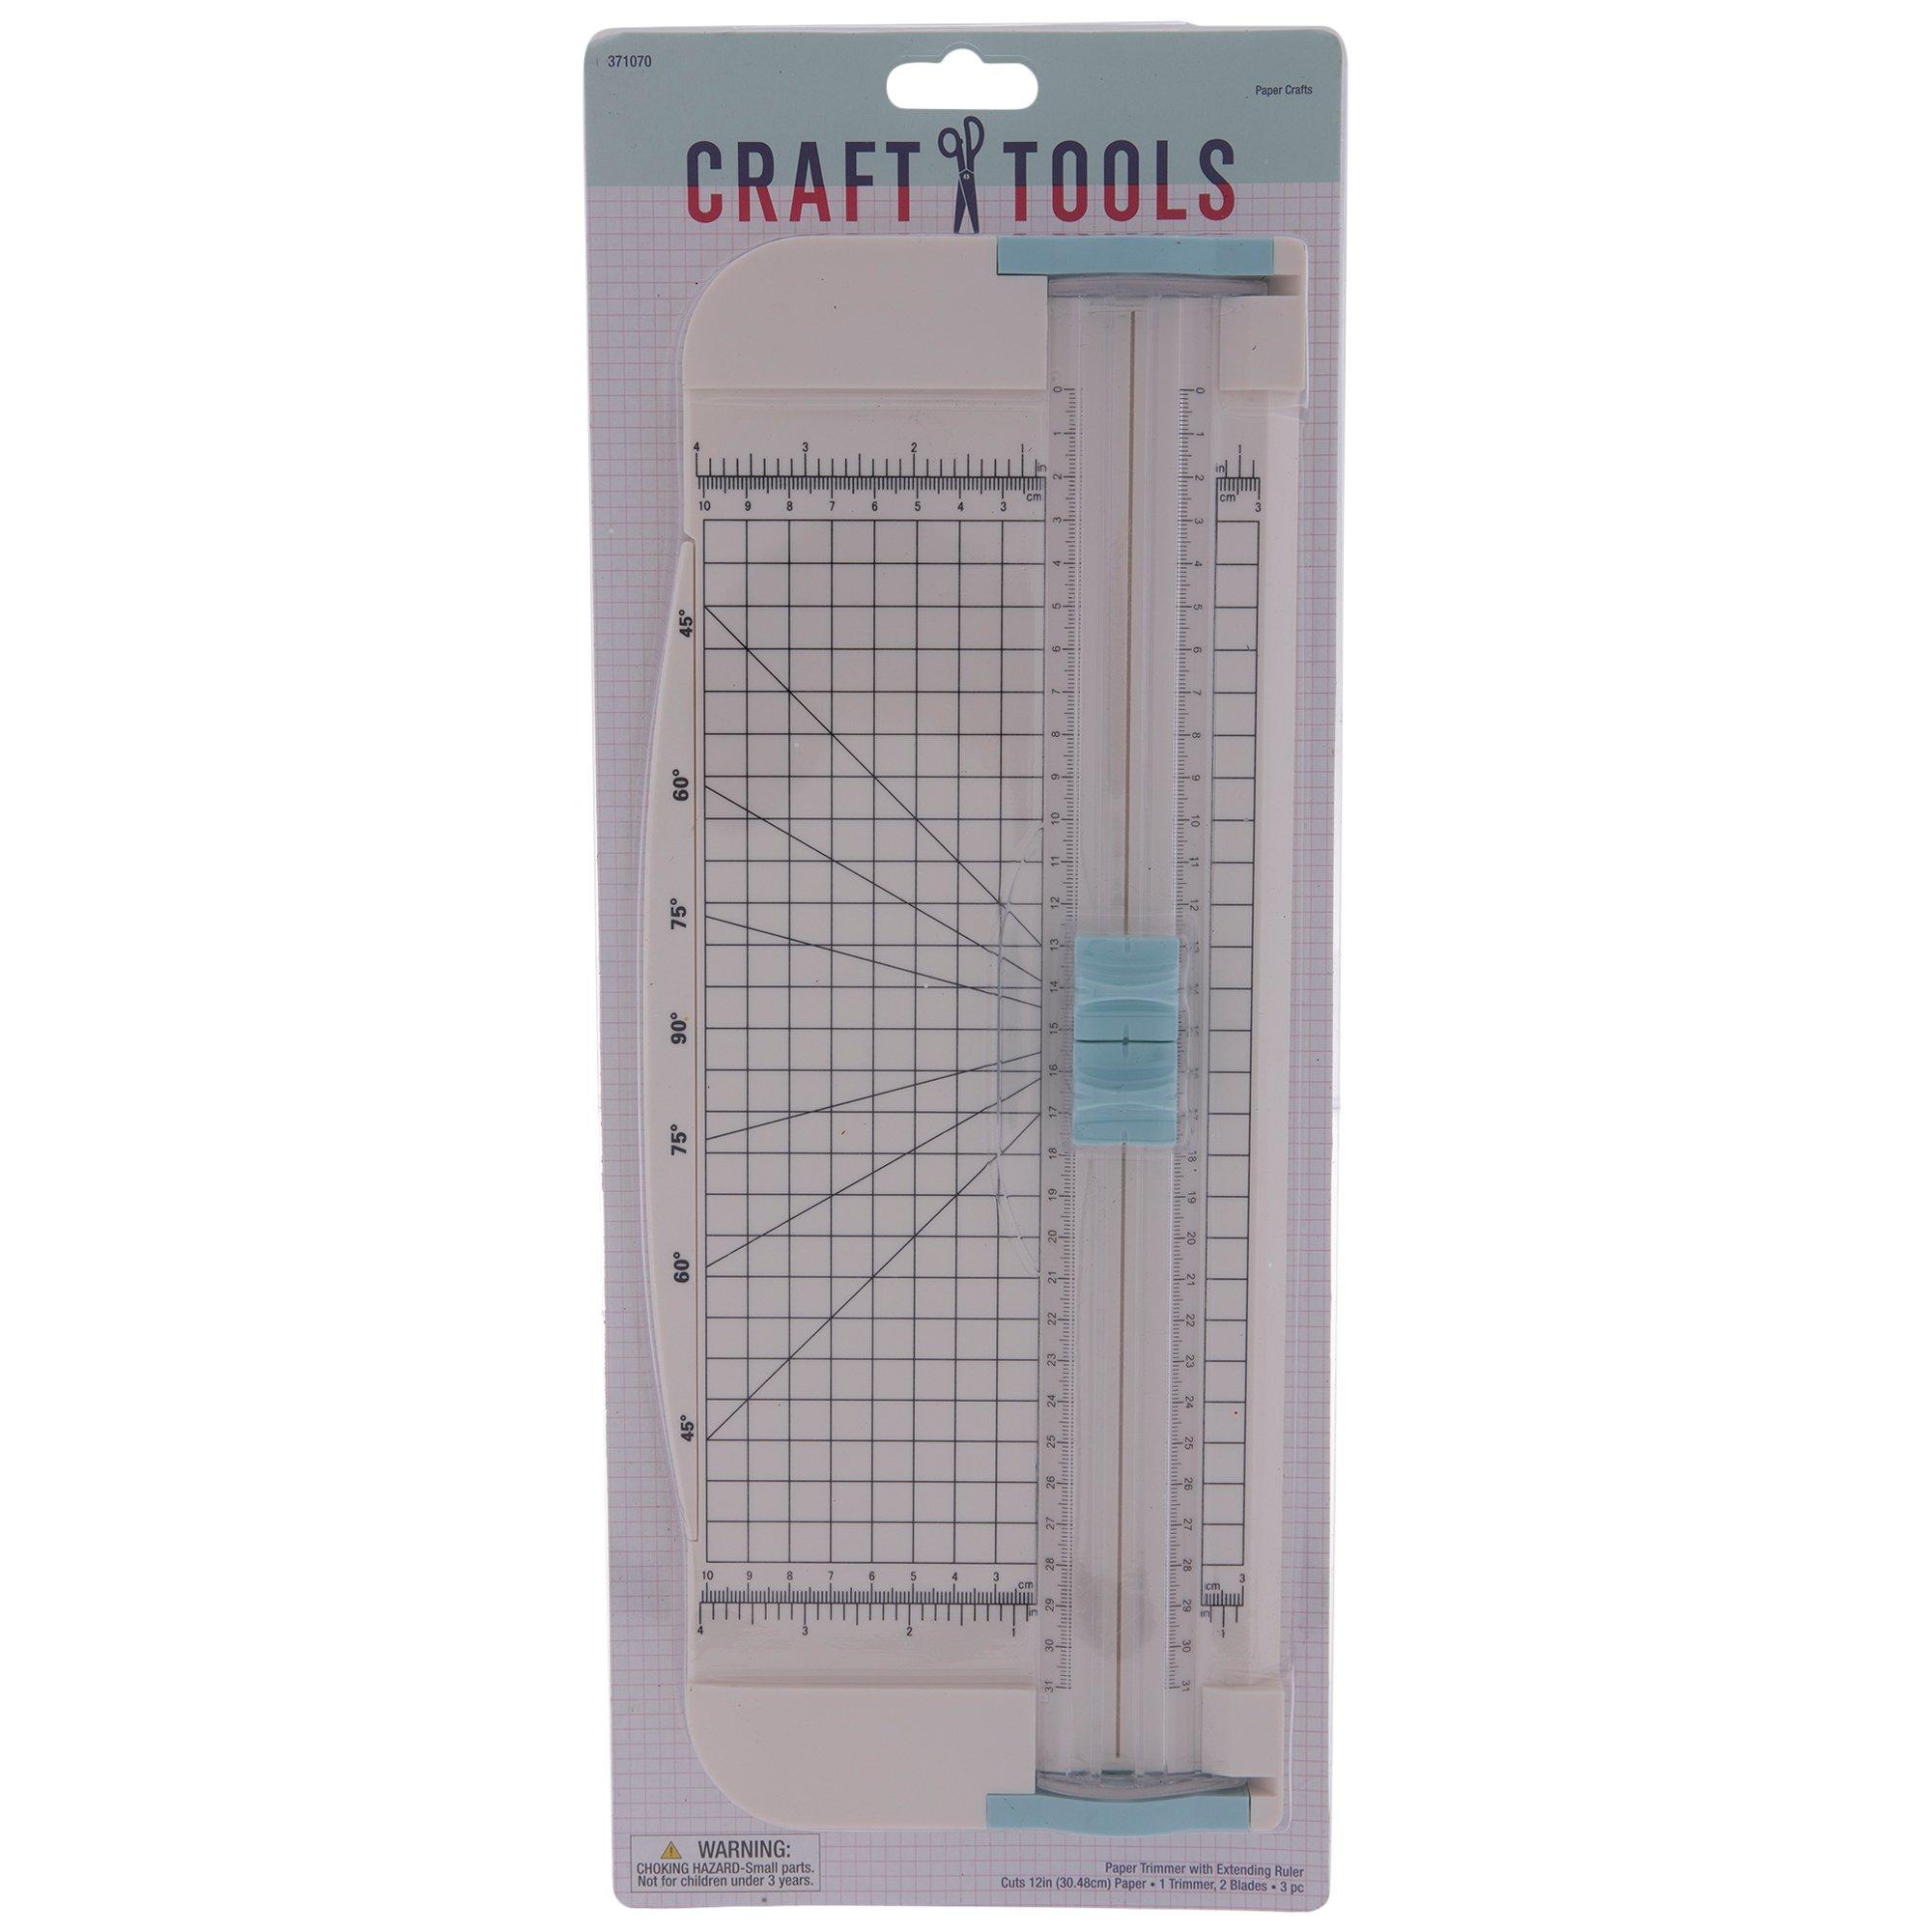 Cricut Tools 12 Paper Trimmer Cutter Scoring Blade Extender Ruler